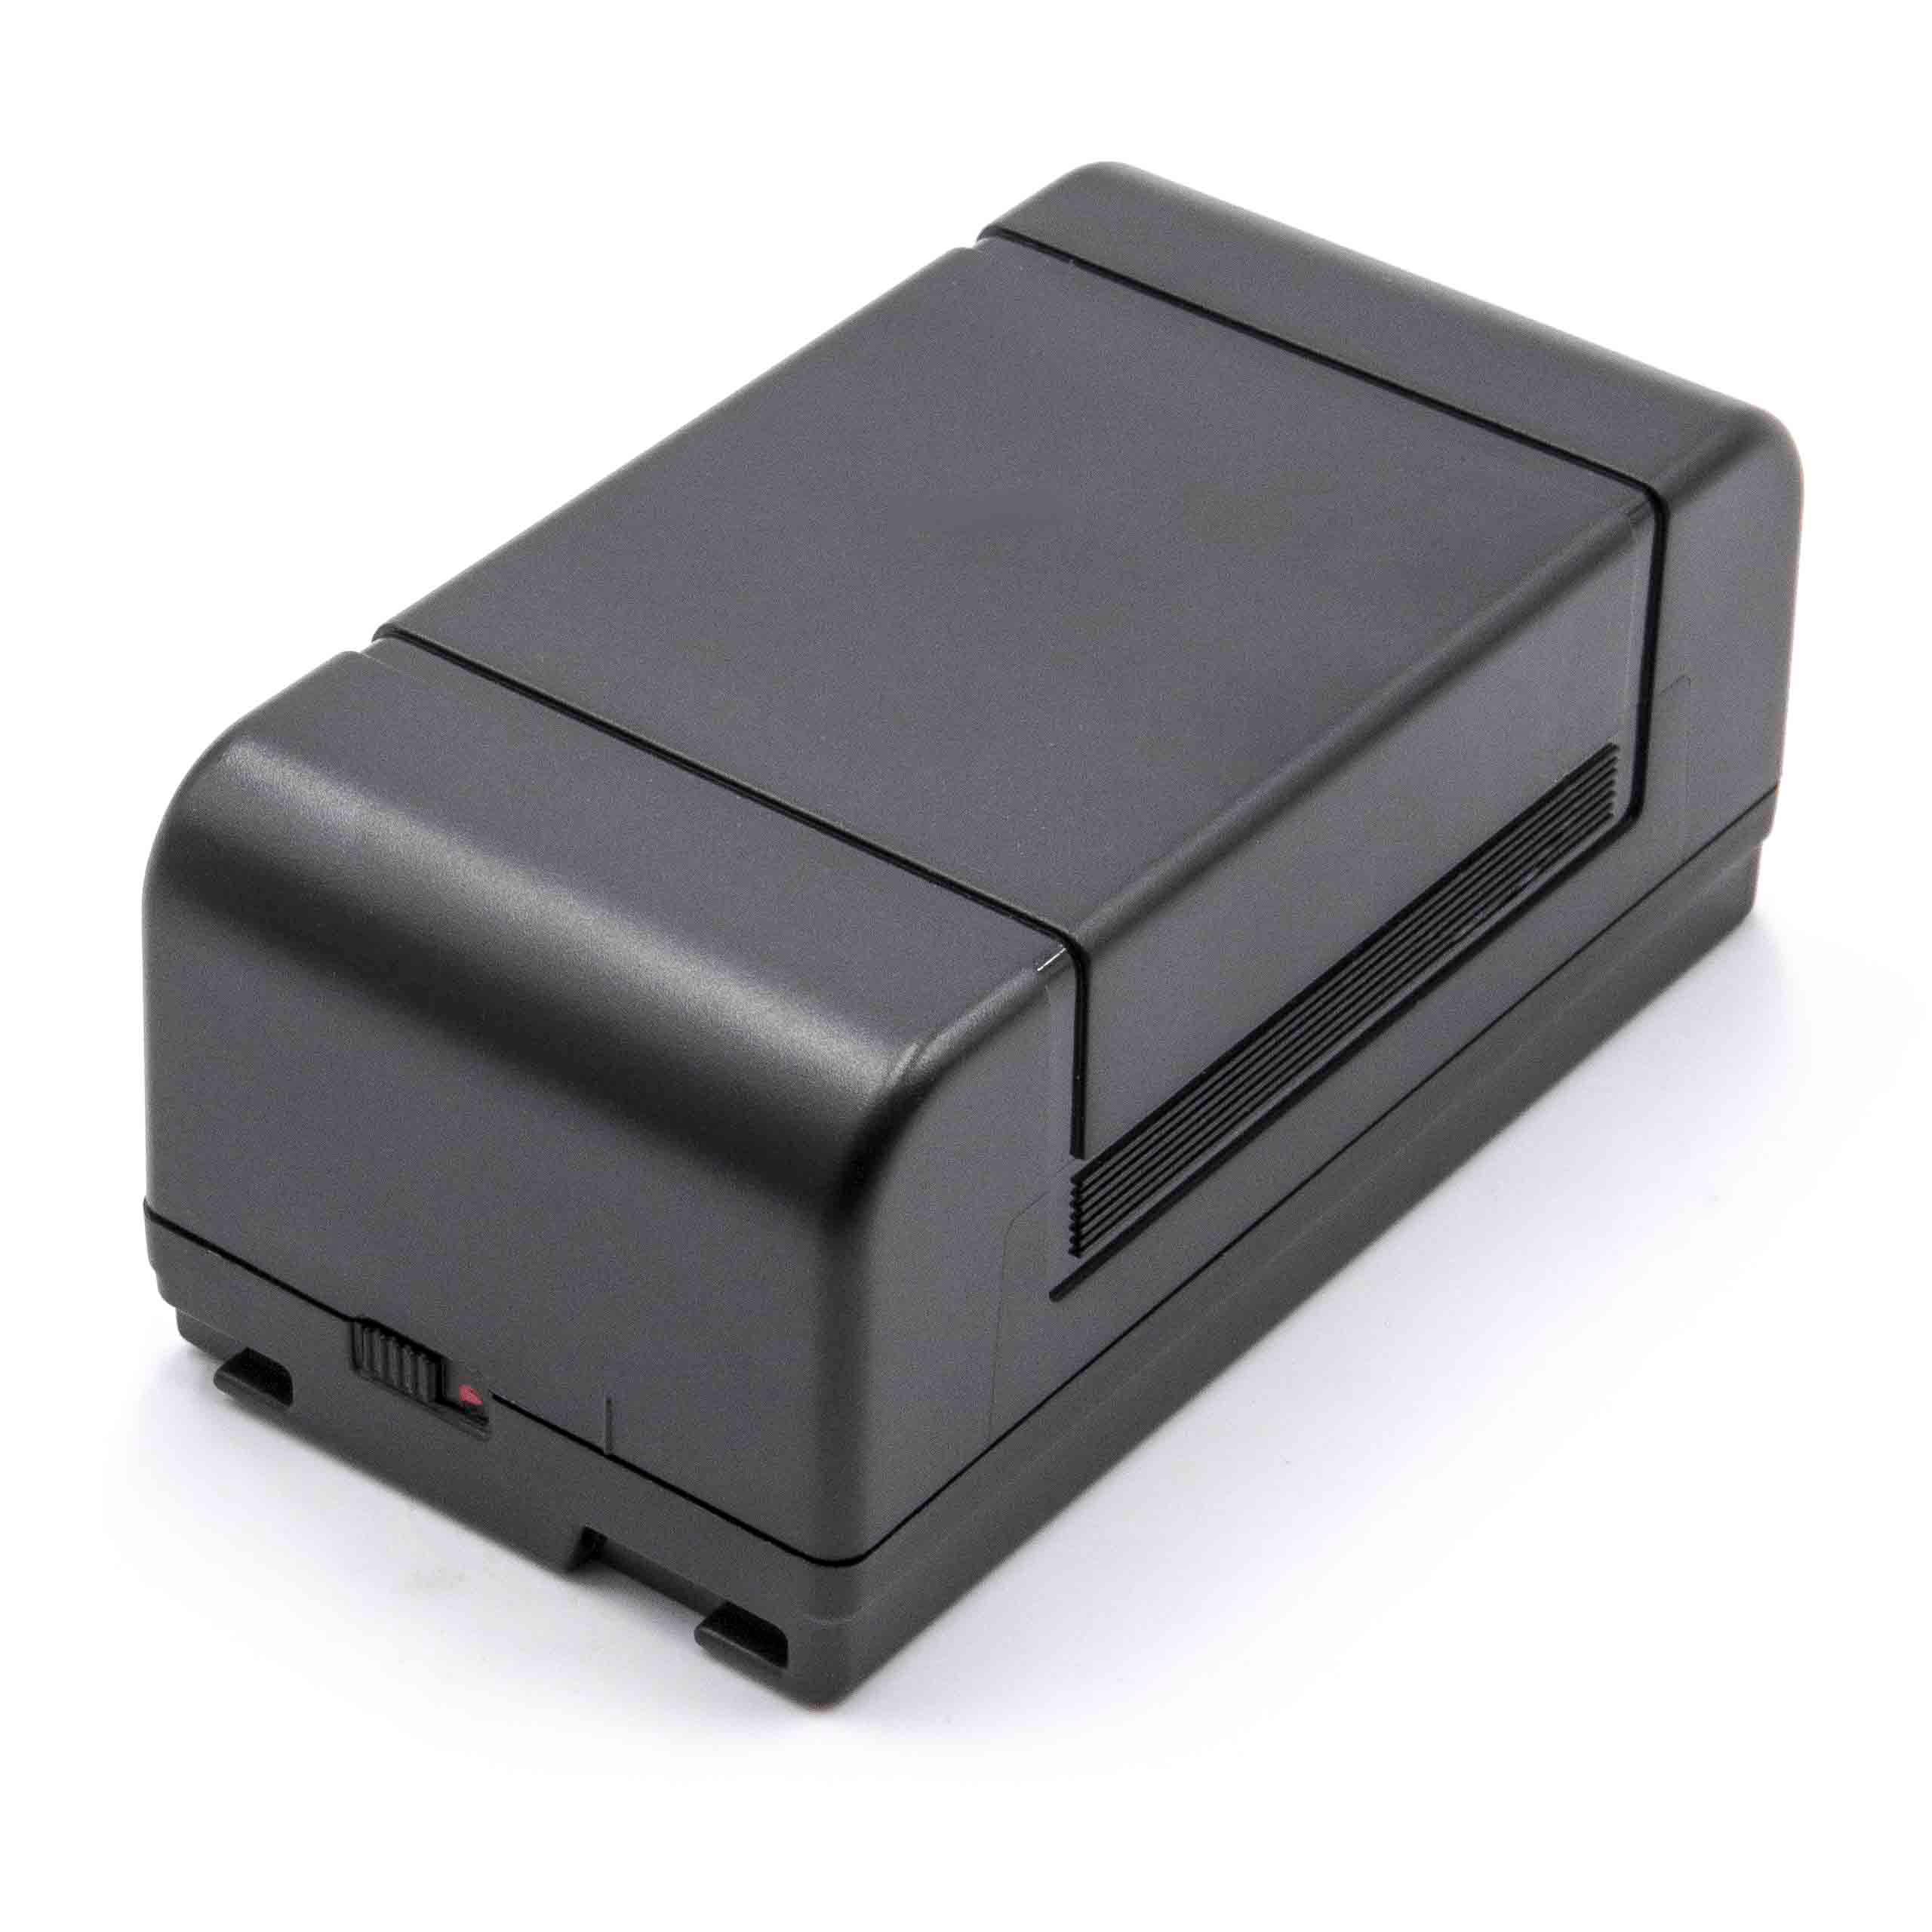 Akumulator do aparatu cyfrowego zamiennik JVC BN-V22U, BN-V20, BN-V22, BN-V20US, BN-V20U - 4000 mAh 6 V NiMH